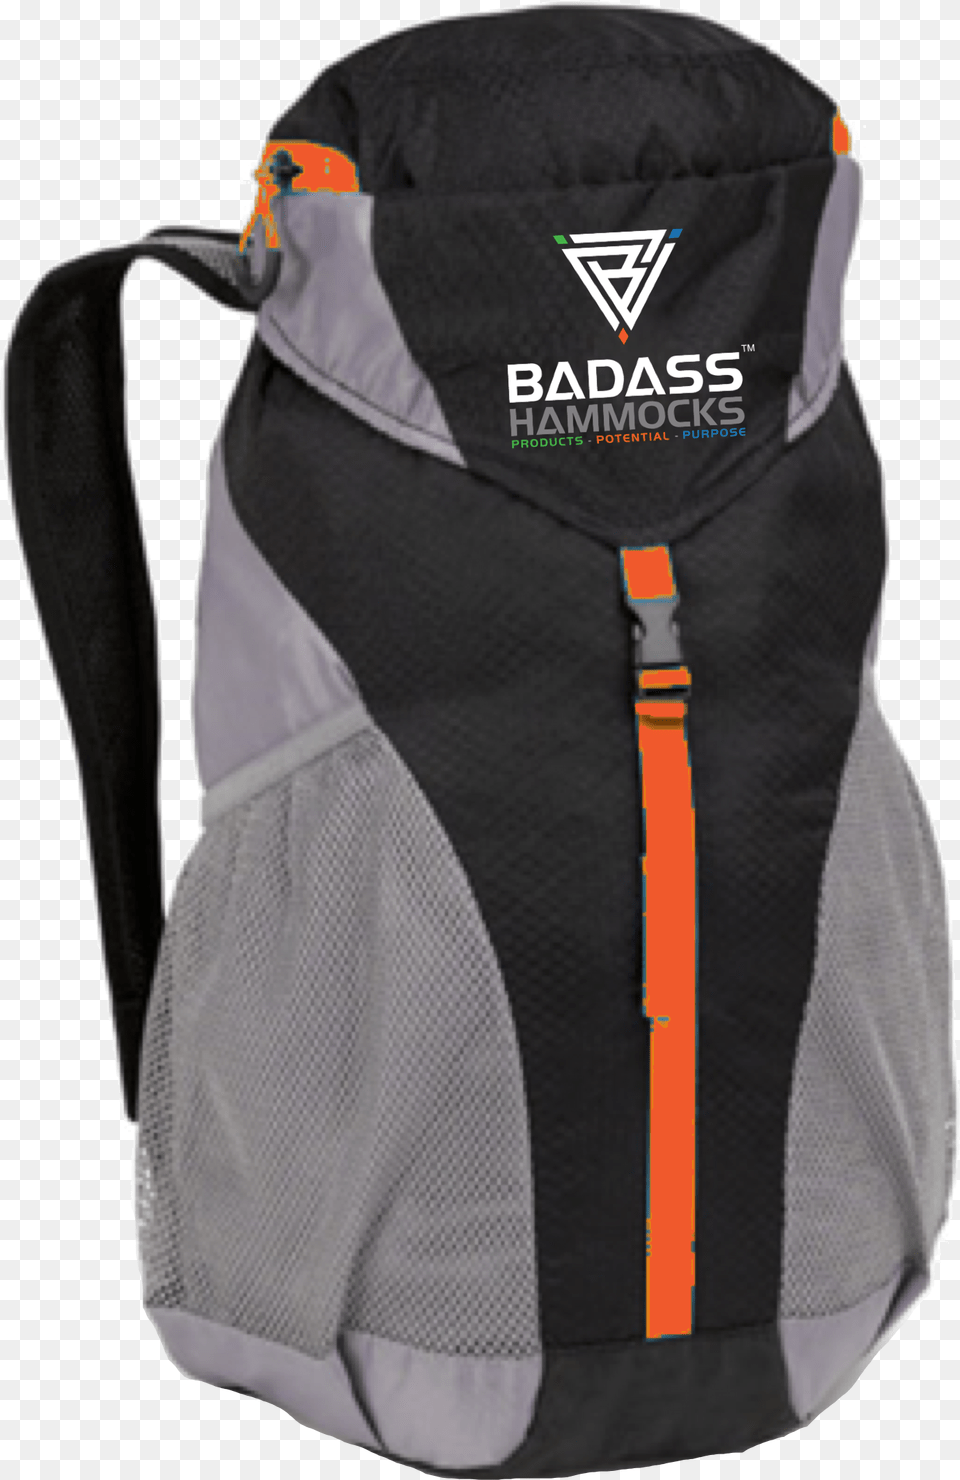 Backpack, Bag, Clothing, Vest Free Png Download